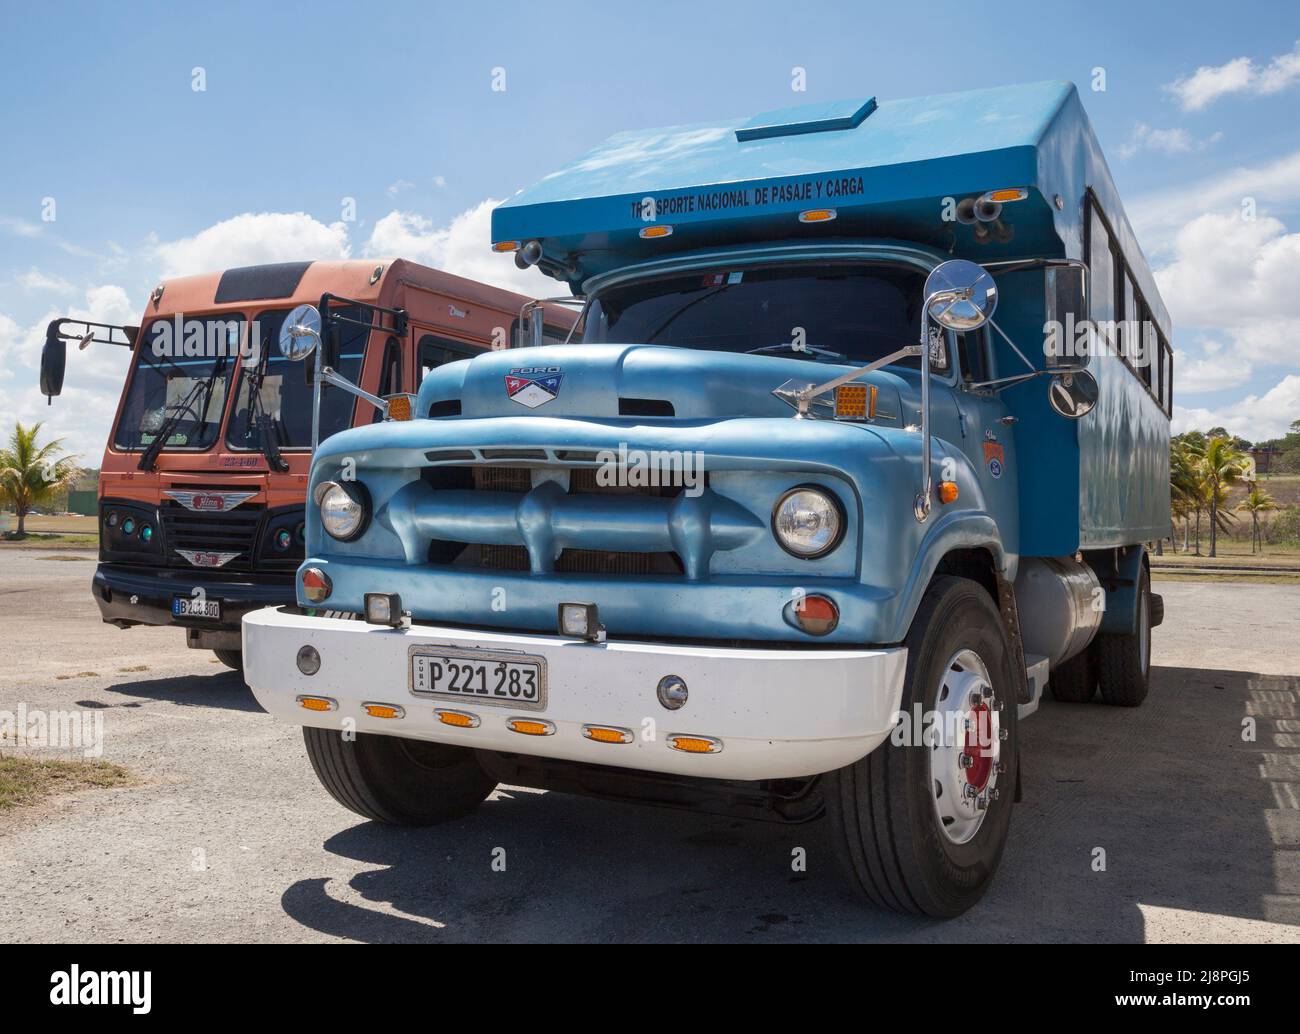 1950s Ford Camion Truck bus, Cuba. A causa dell'embargo, i veicoli vintage vengono riproposti con sedili a panca come un mezzo di trasporto pubblico rudimentale. Foto Stock